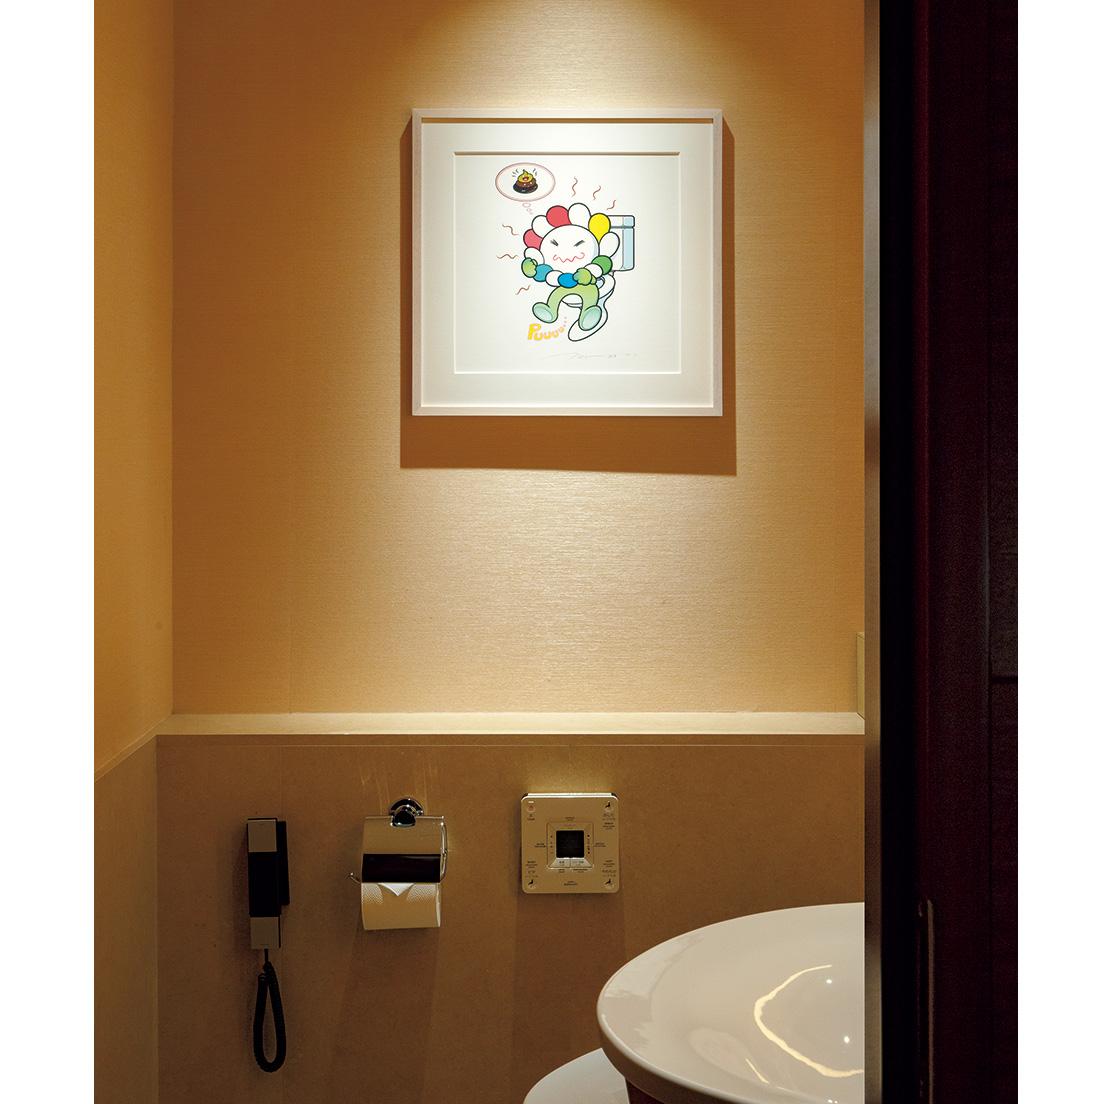 来客用トイレにはお花の子のうんち姿を描いた作品《Puuuu》が。